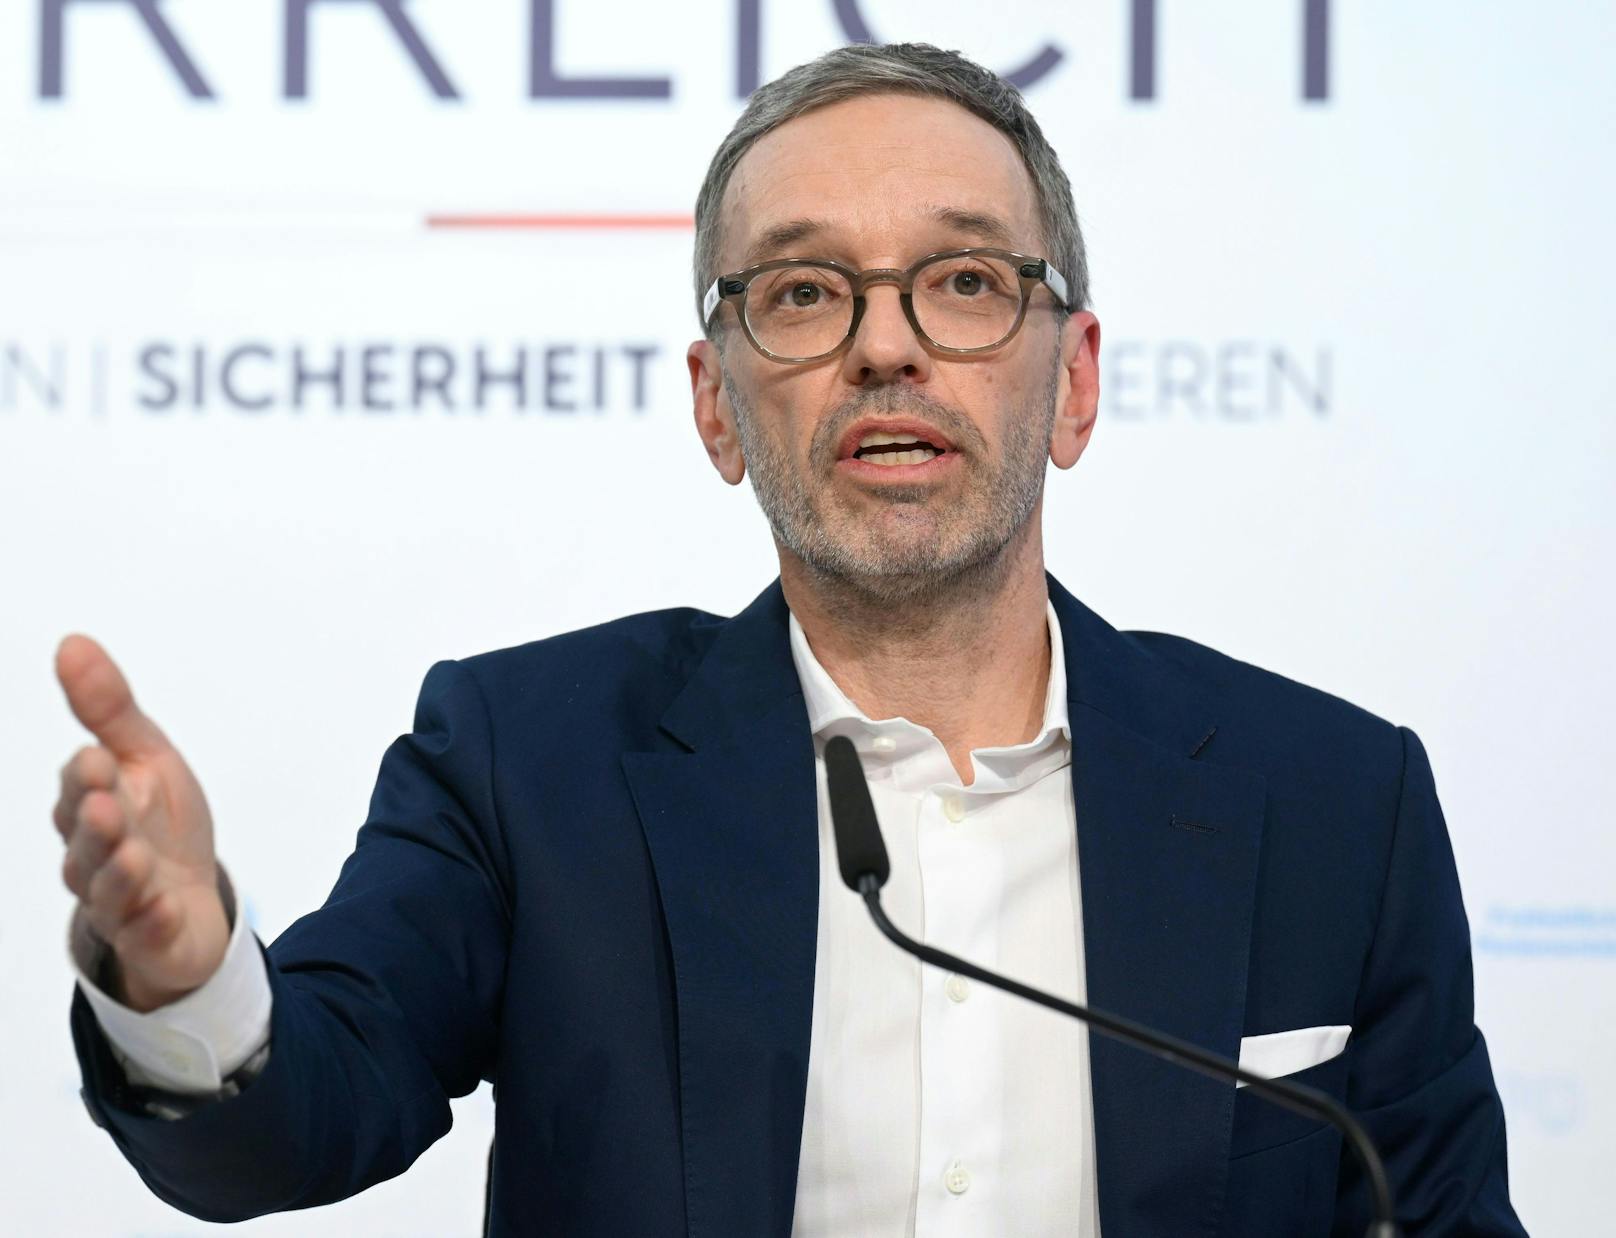 FPÖ-Parteiobmann Herbert Kickl kann sich eine Koalition sowohl mit der SPÖ als auch der ÖVP vorstellen.